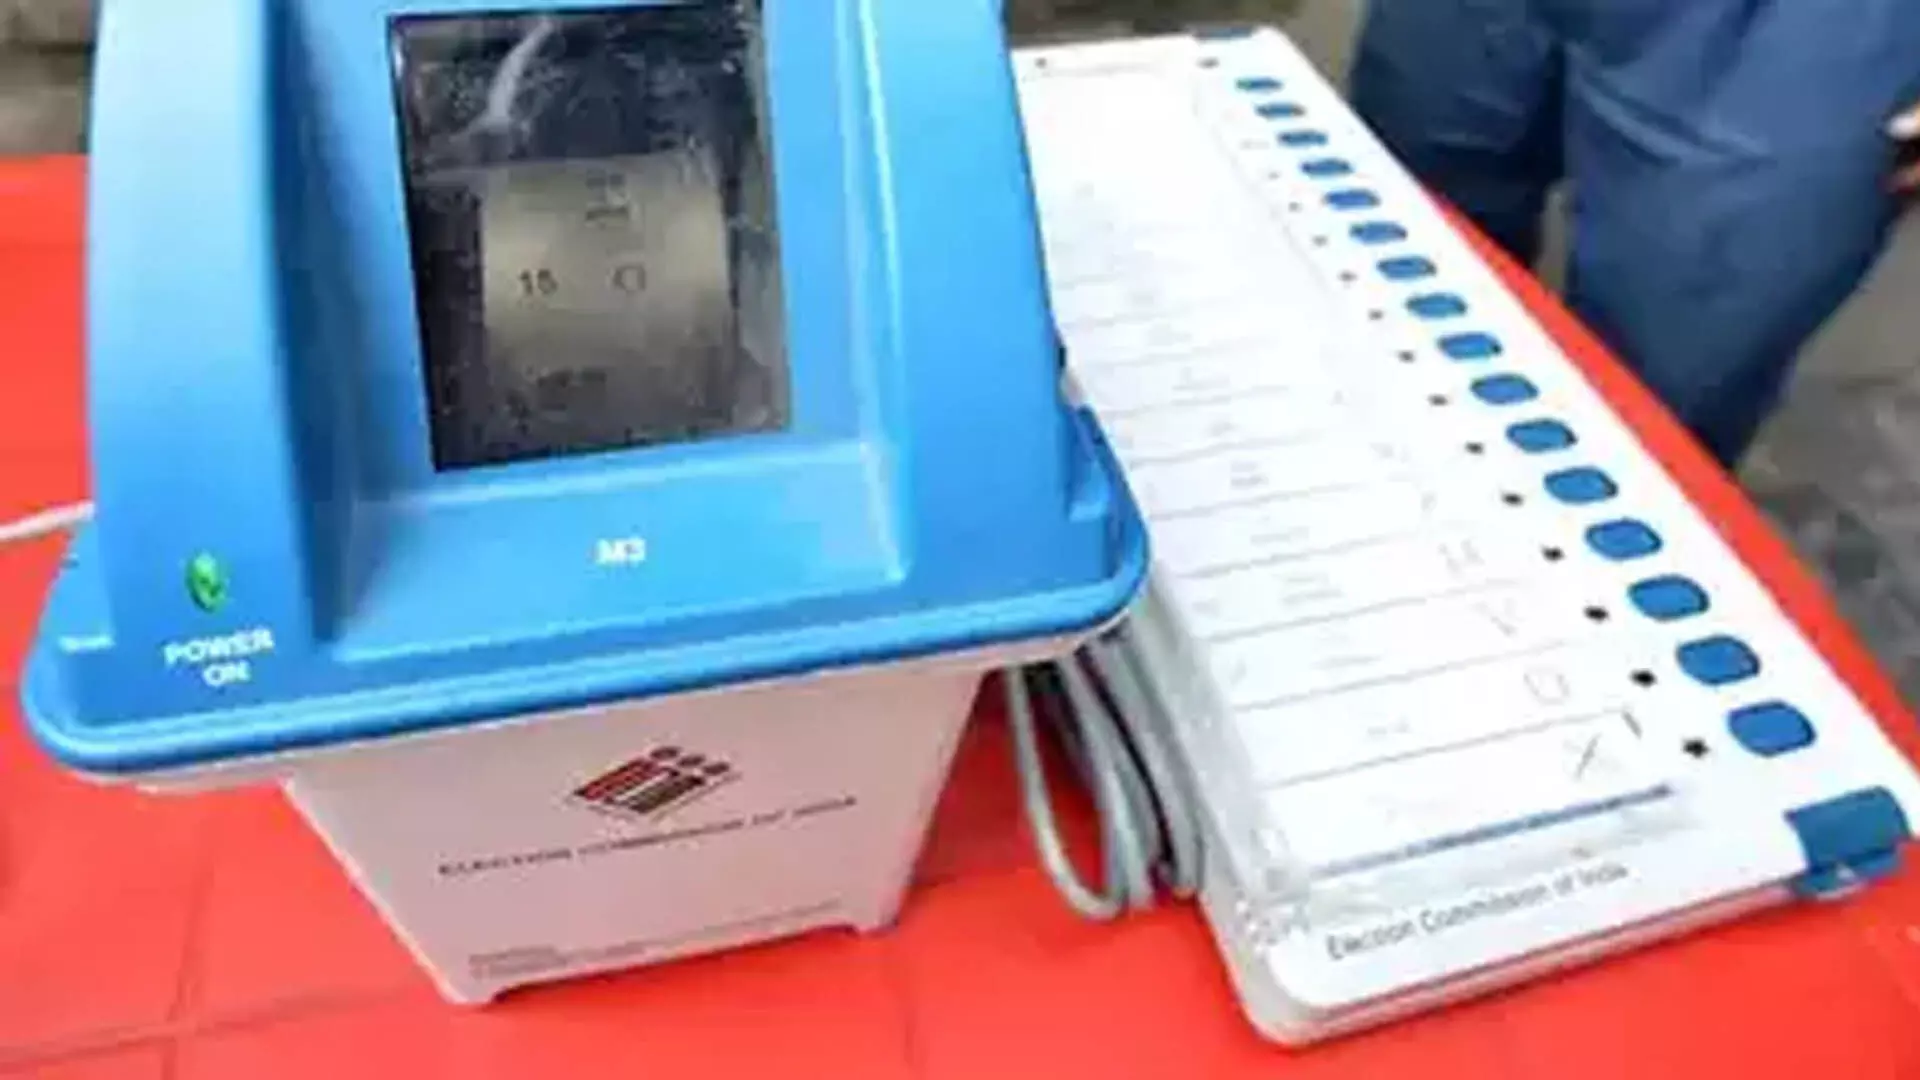 तमिलनाडु, पुडुचेरी  19 अप्रैल को एक चरण में मतदान,  उपचुनाव एक ही दिन